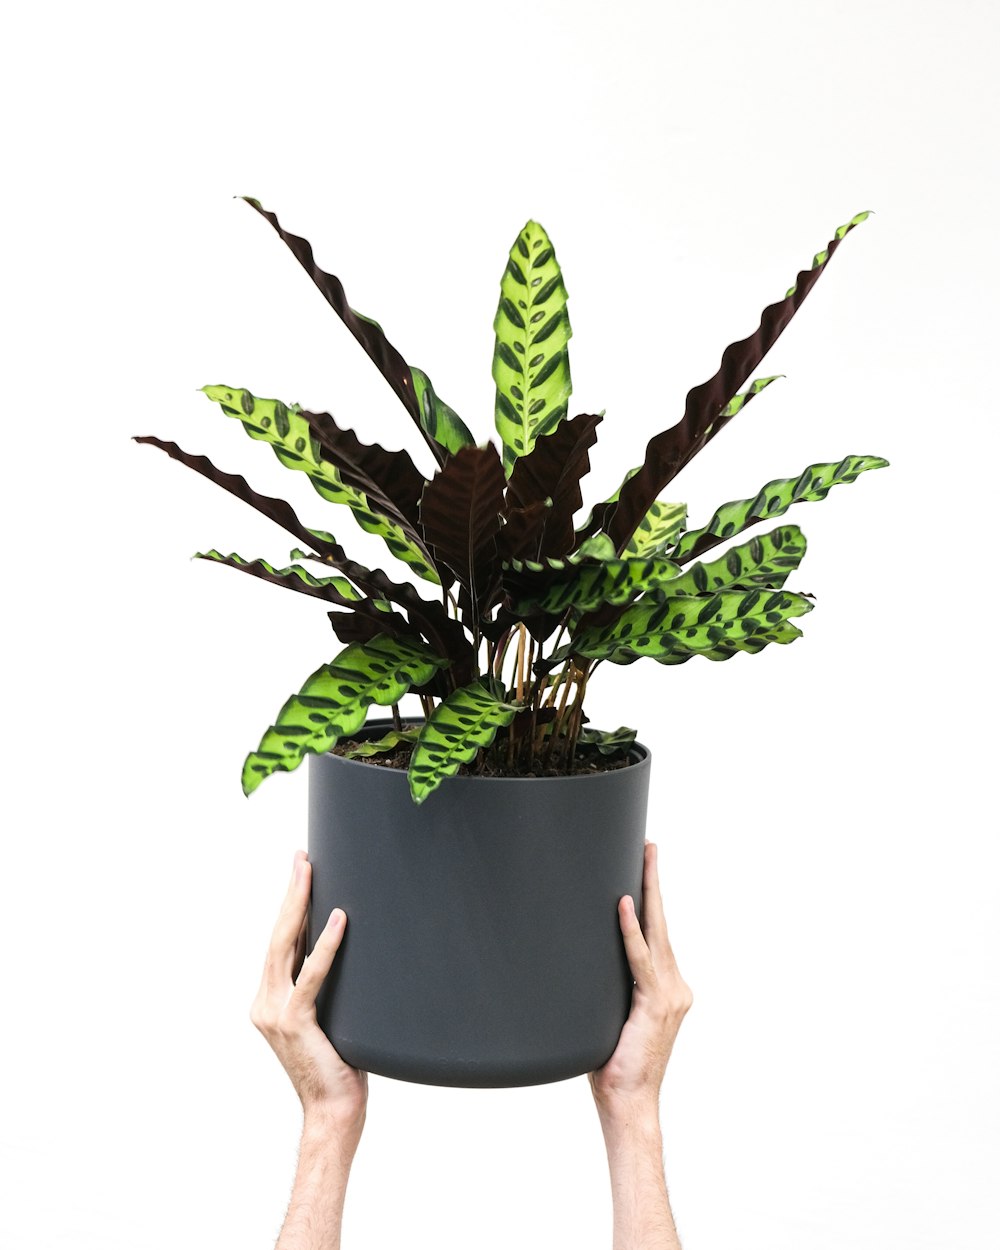 una mano sosteniendo una planta en maceta